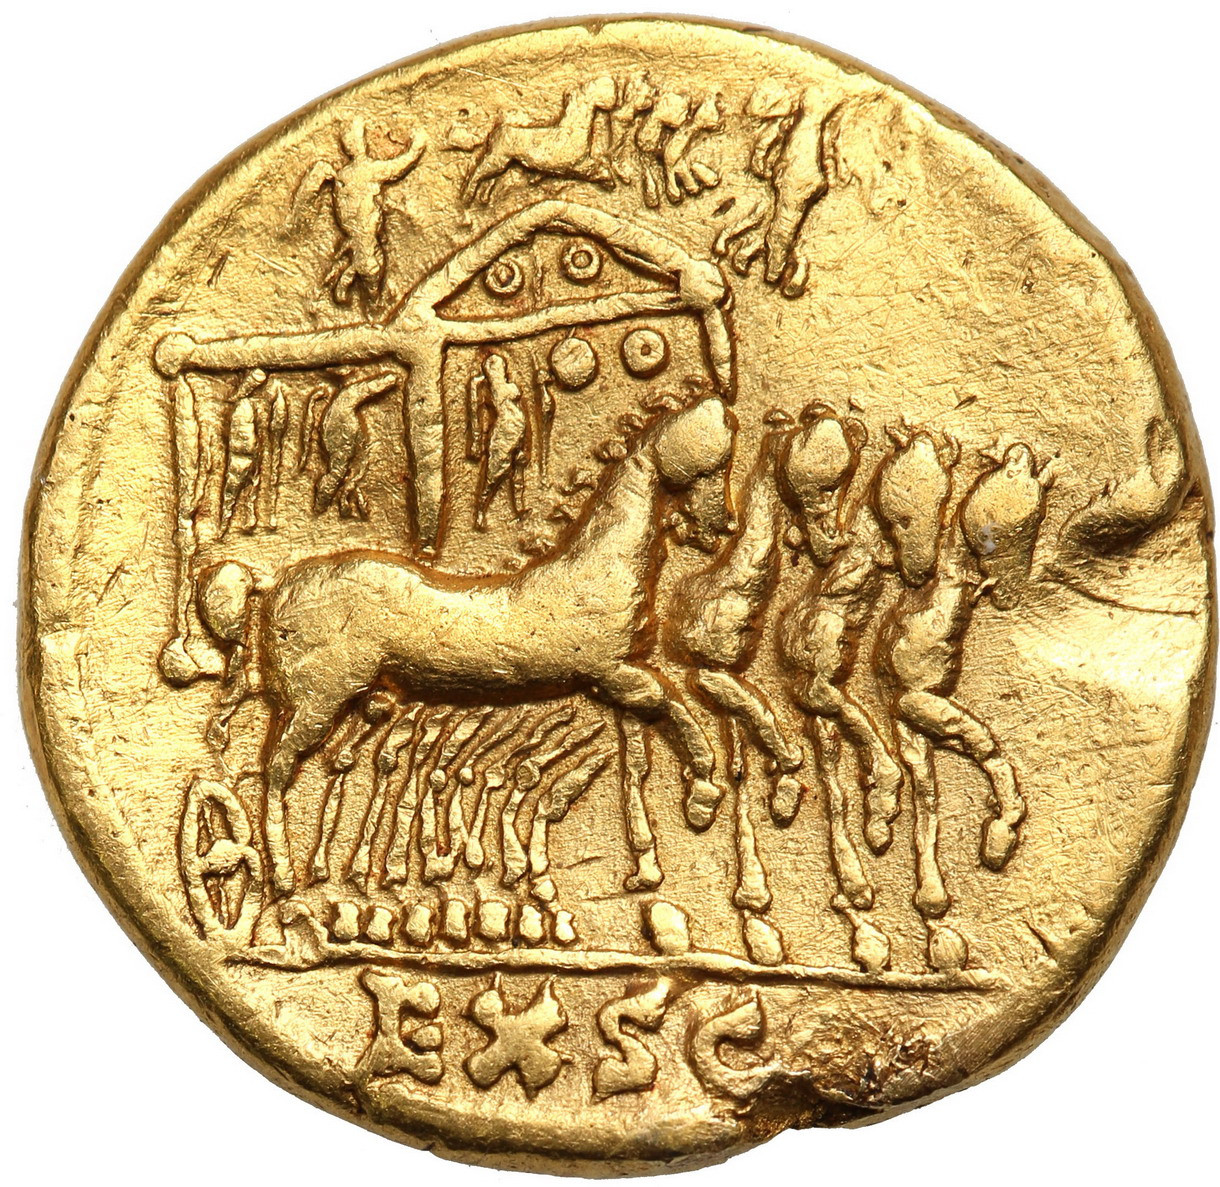 Cesarstwo Rzymskie, Aureus, Klaudiusz 41 – 54 r.n.e., Emisja pośmiertna z czasów Nerona 54 – 68 r.n.e. - RZADKOŚĆ